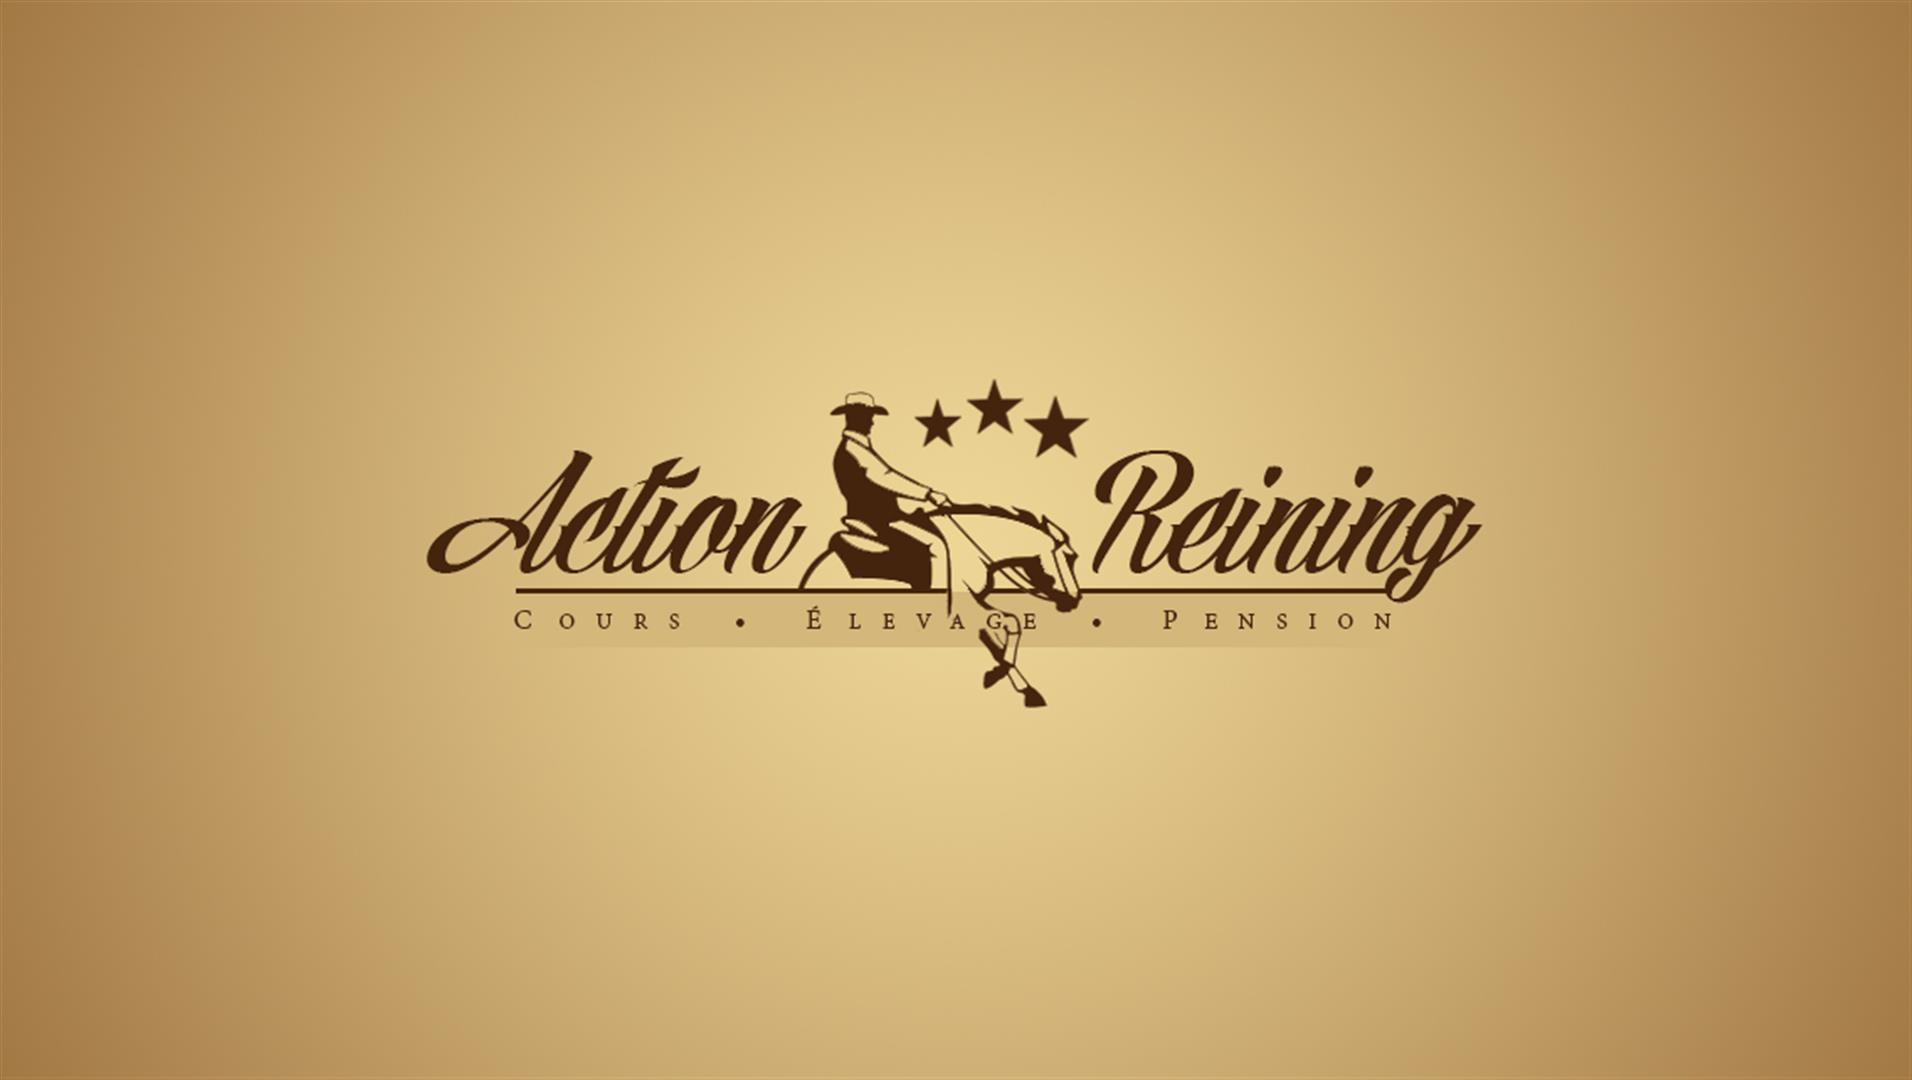 3 action reining logotype creation logo